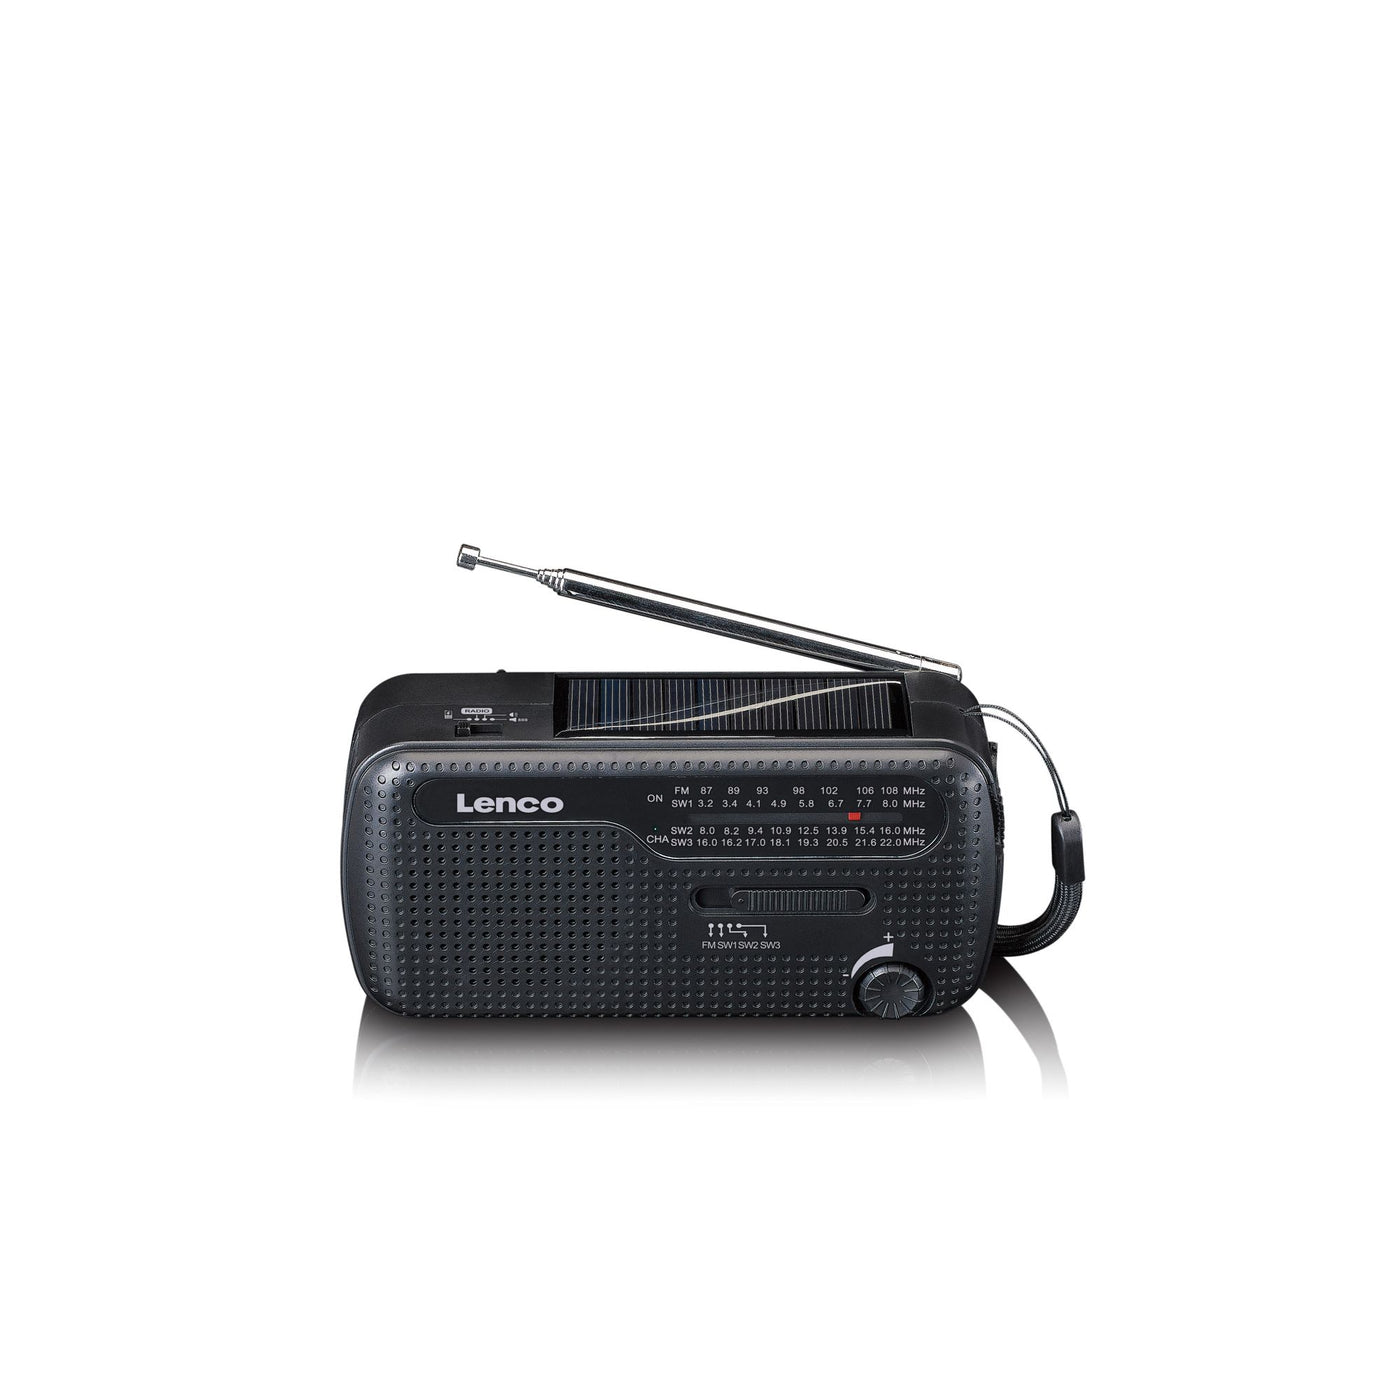 LENCO MCR-112BK - Przenośne radio awaryjne z ręczną korbą, latarka i power bank w jednym - Czarny